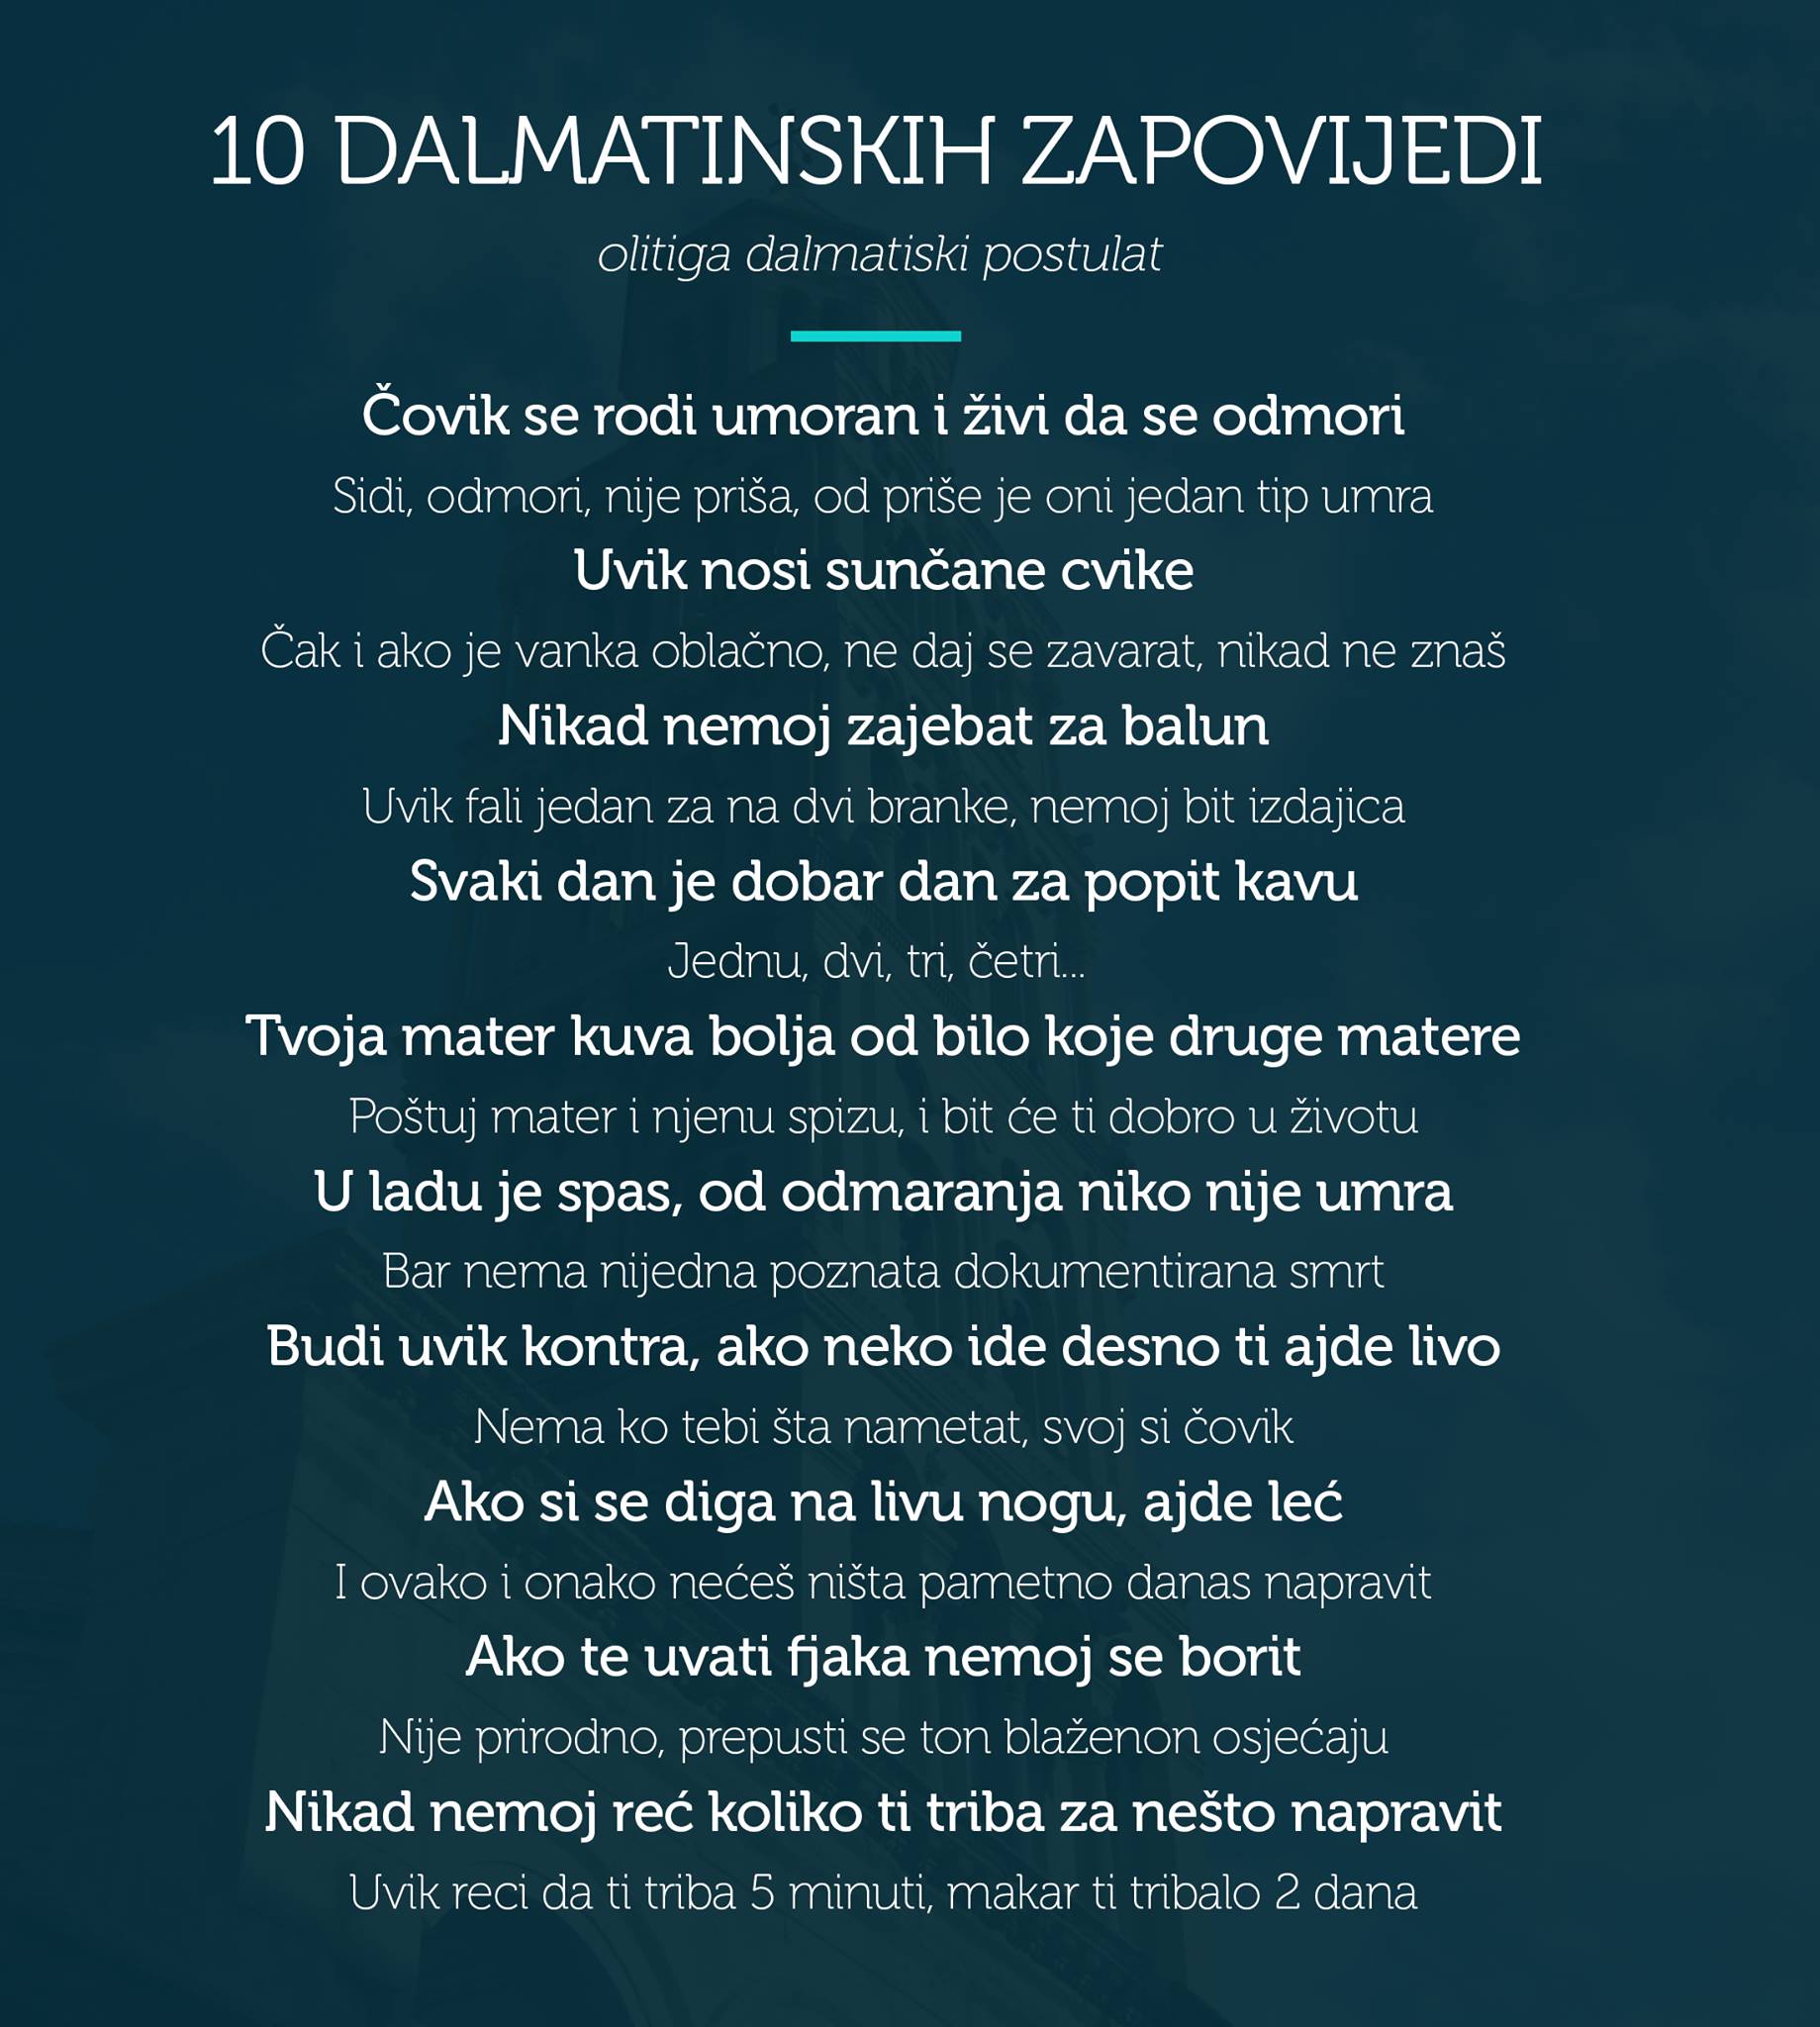 10 dalmatinskih zapovijedi